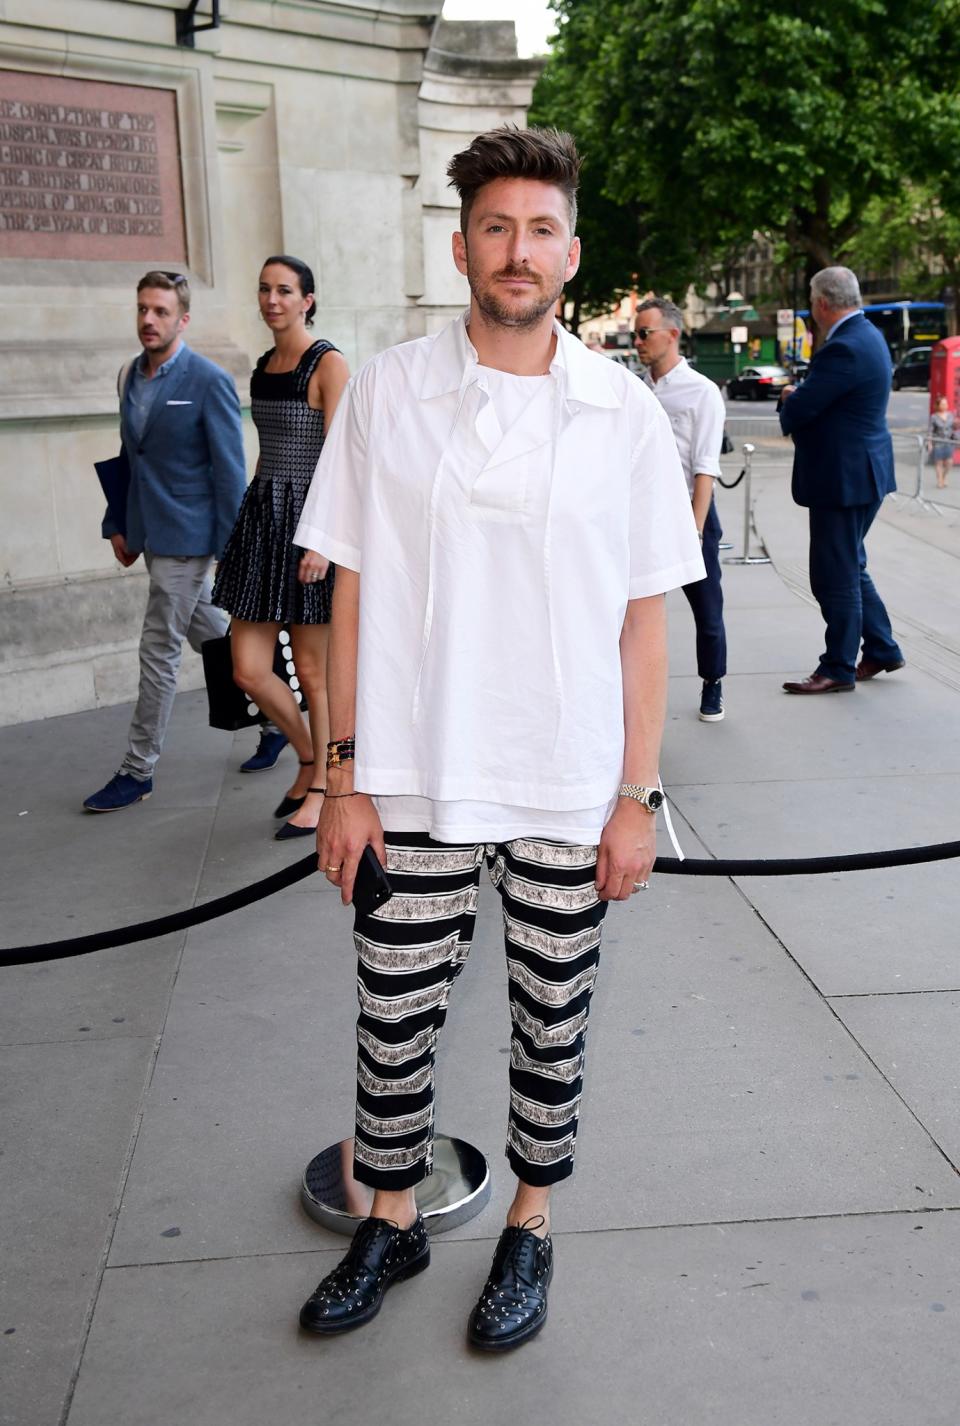 <p>Der London Fashion Week Designer sah in seinem weiten Shirt und gestreiften Hosen cool aus – war für die Veranstaltung aber angesichts der royalen Gäste vermutlich underdressed.<br>[Bild: PA] </p>